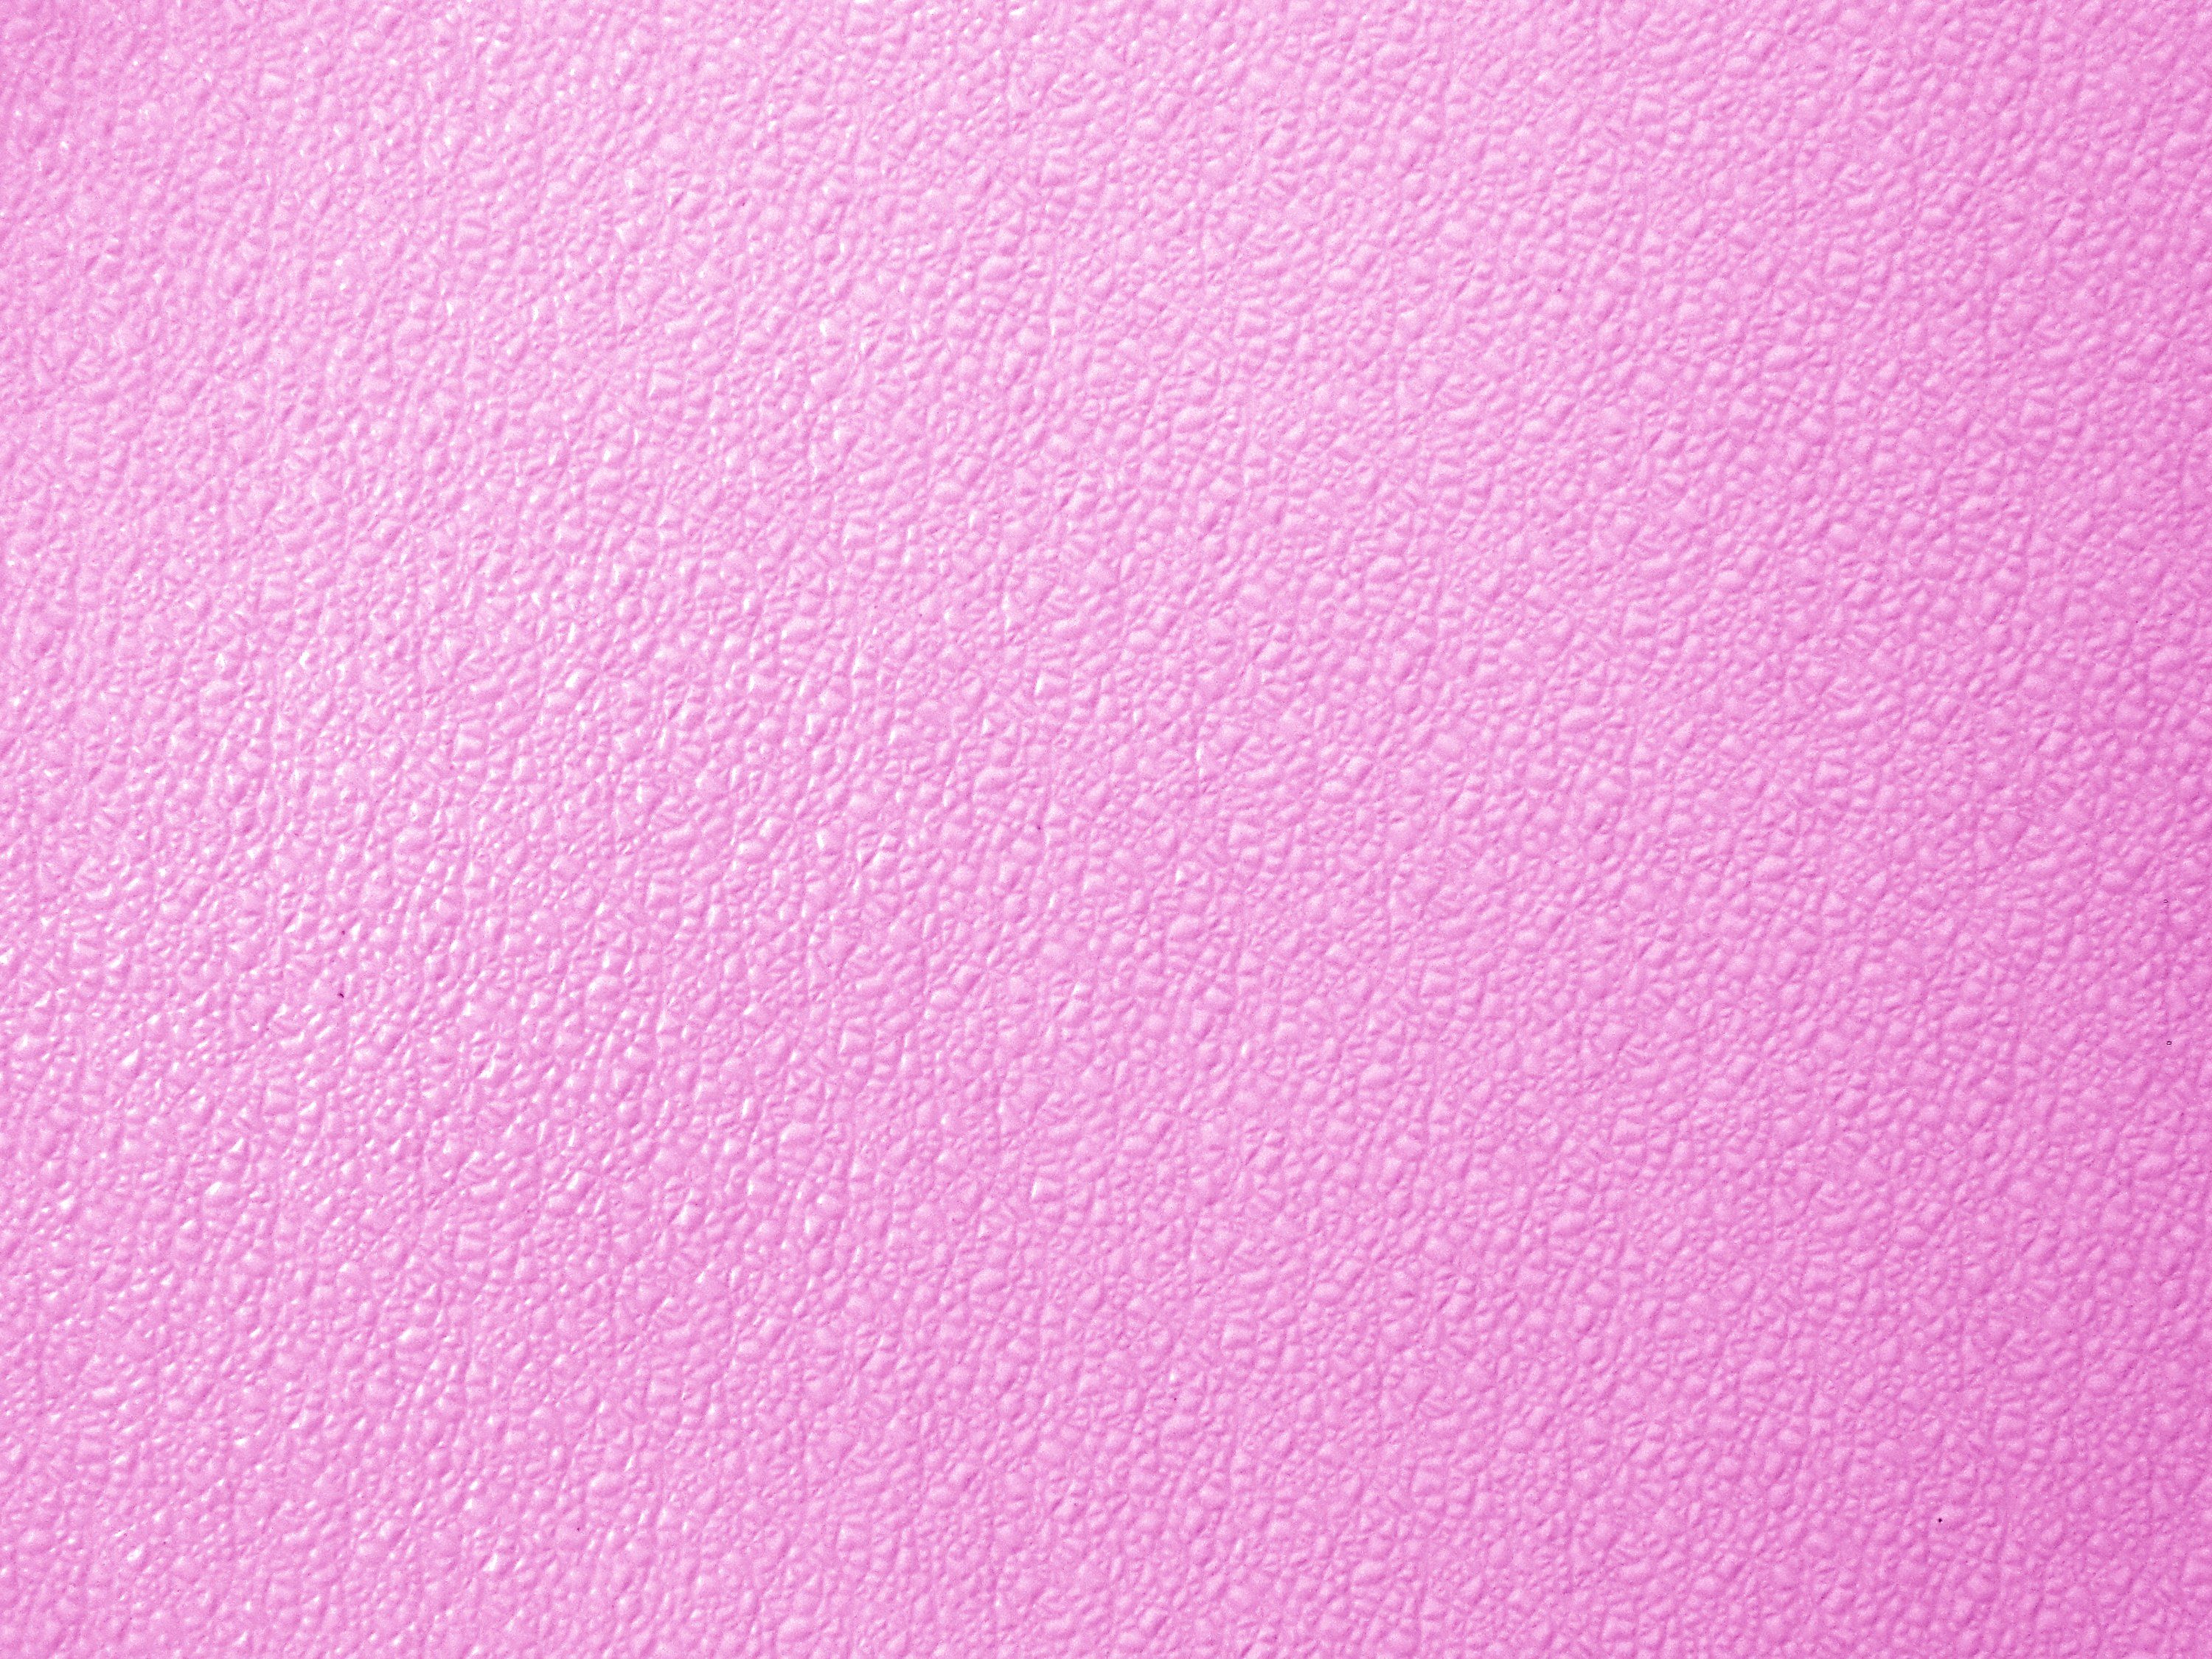 Bumpy Pink Plastic Texture Picture. Free Photograph. Photo Public Domain